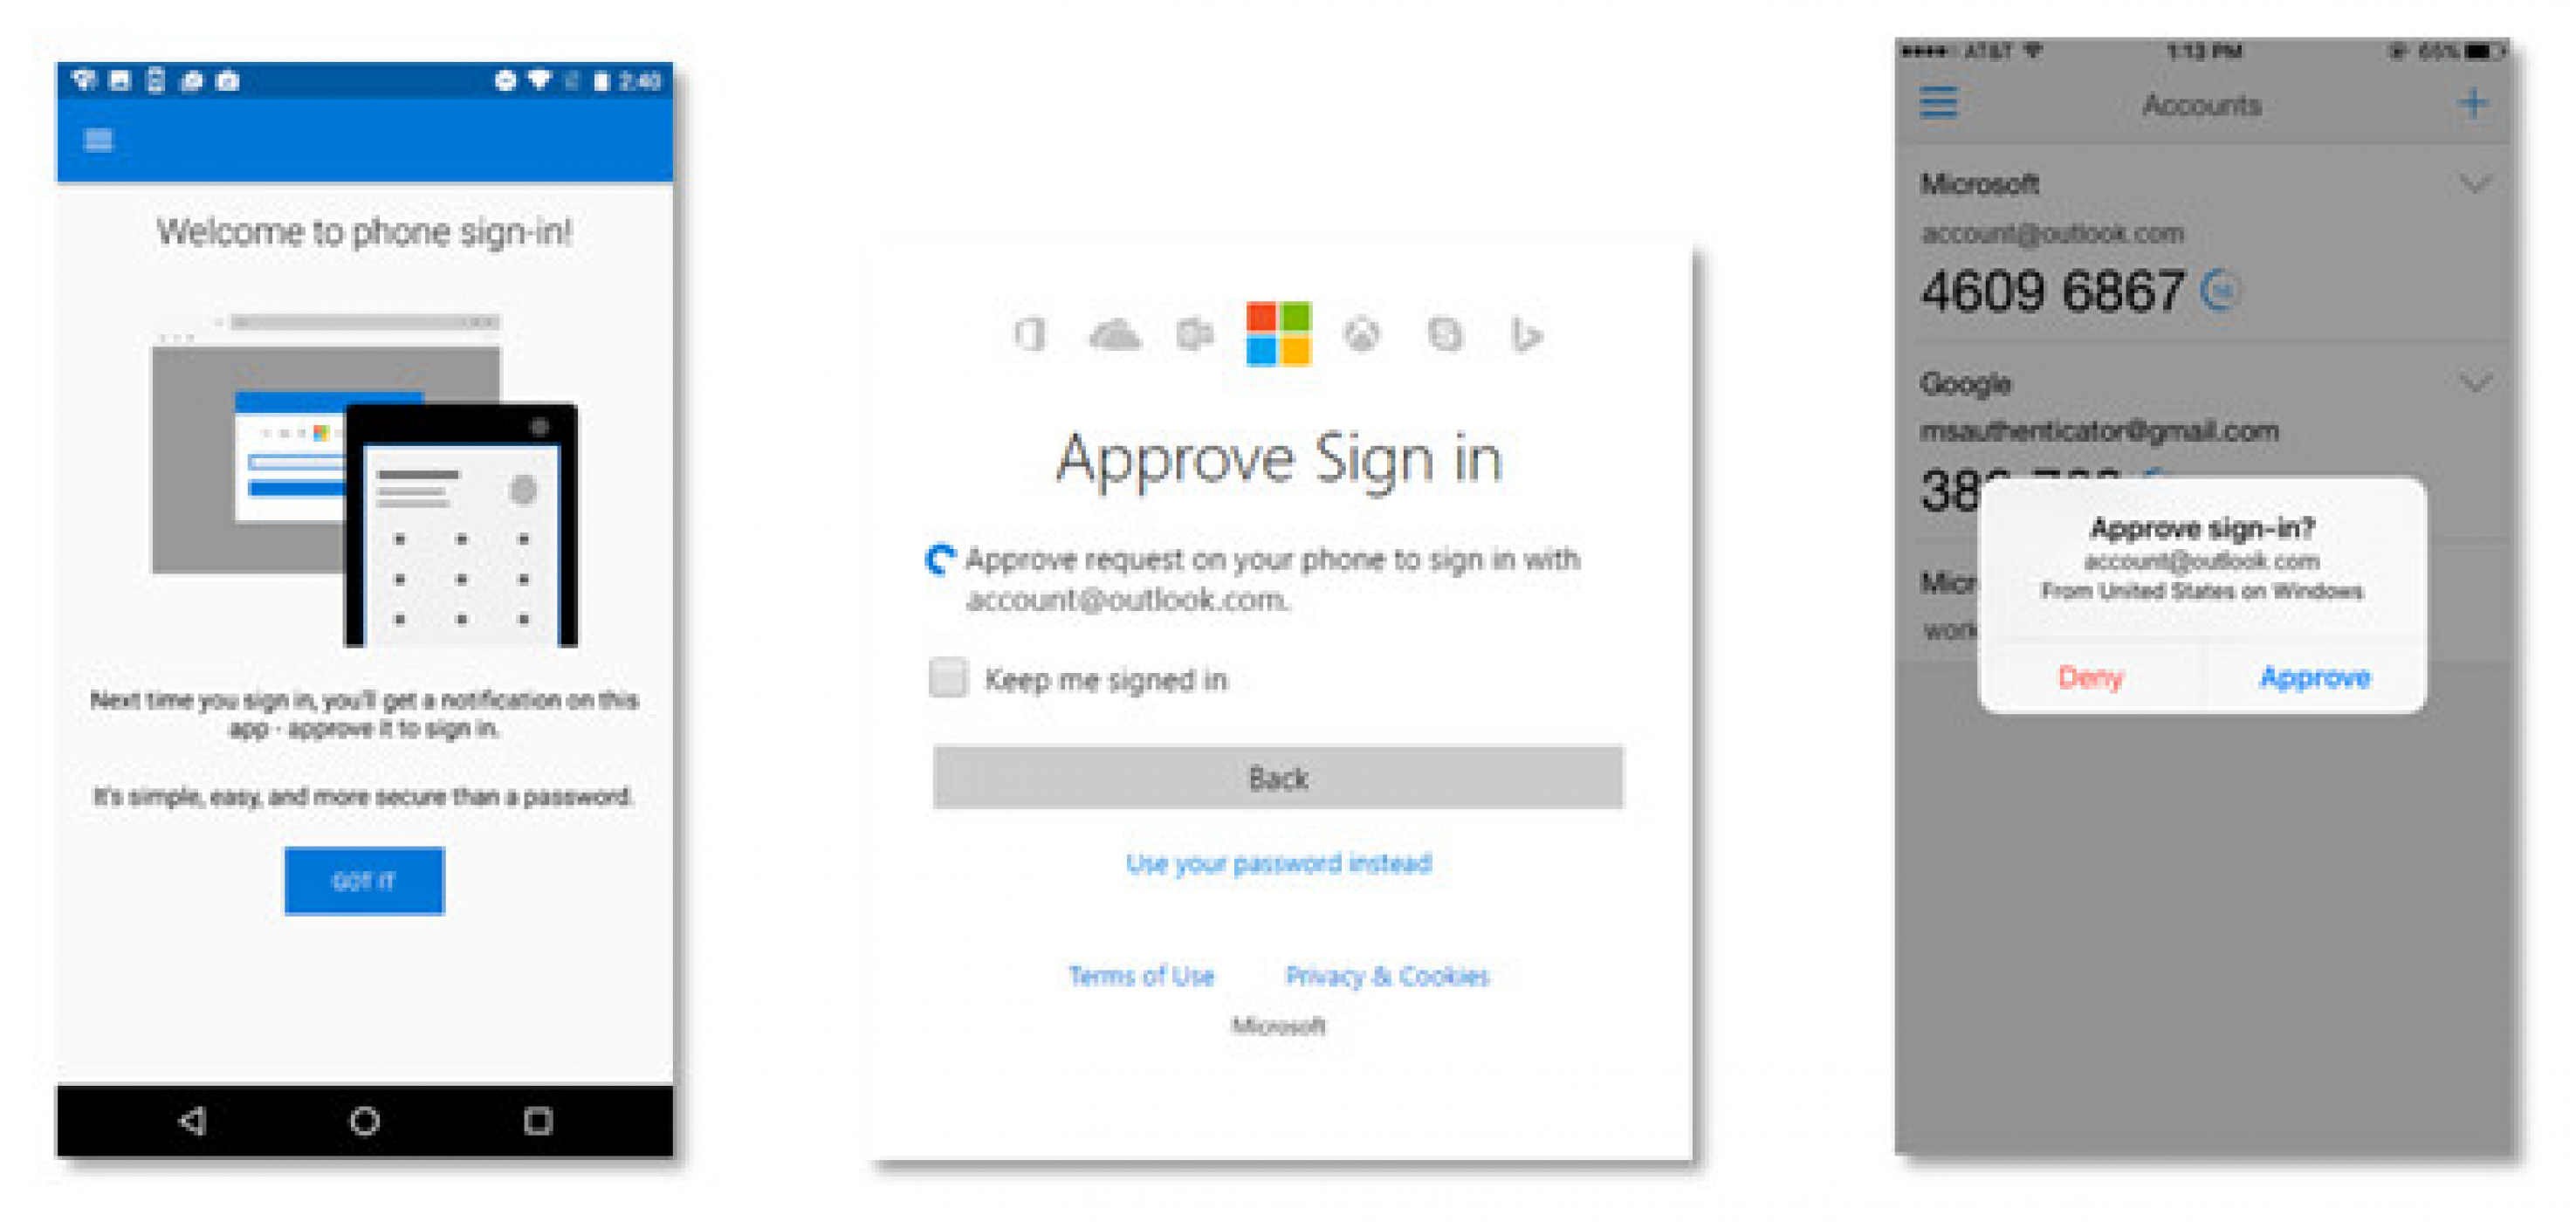 Вече можете да влизате в Microsoft профила си, без да въвеждате парола